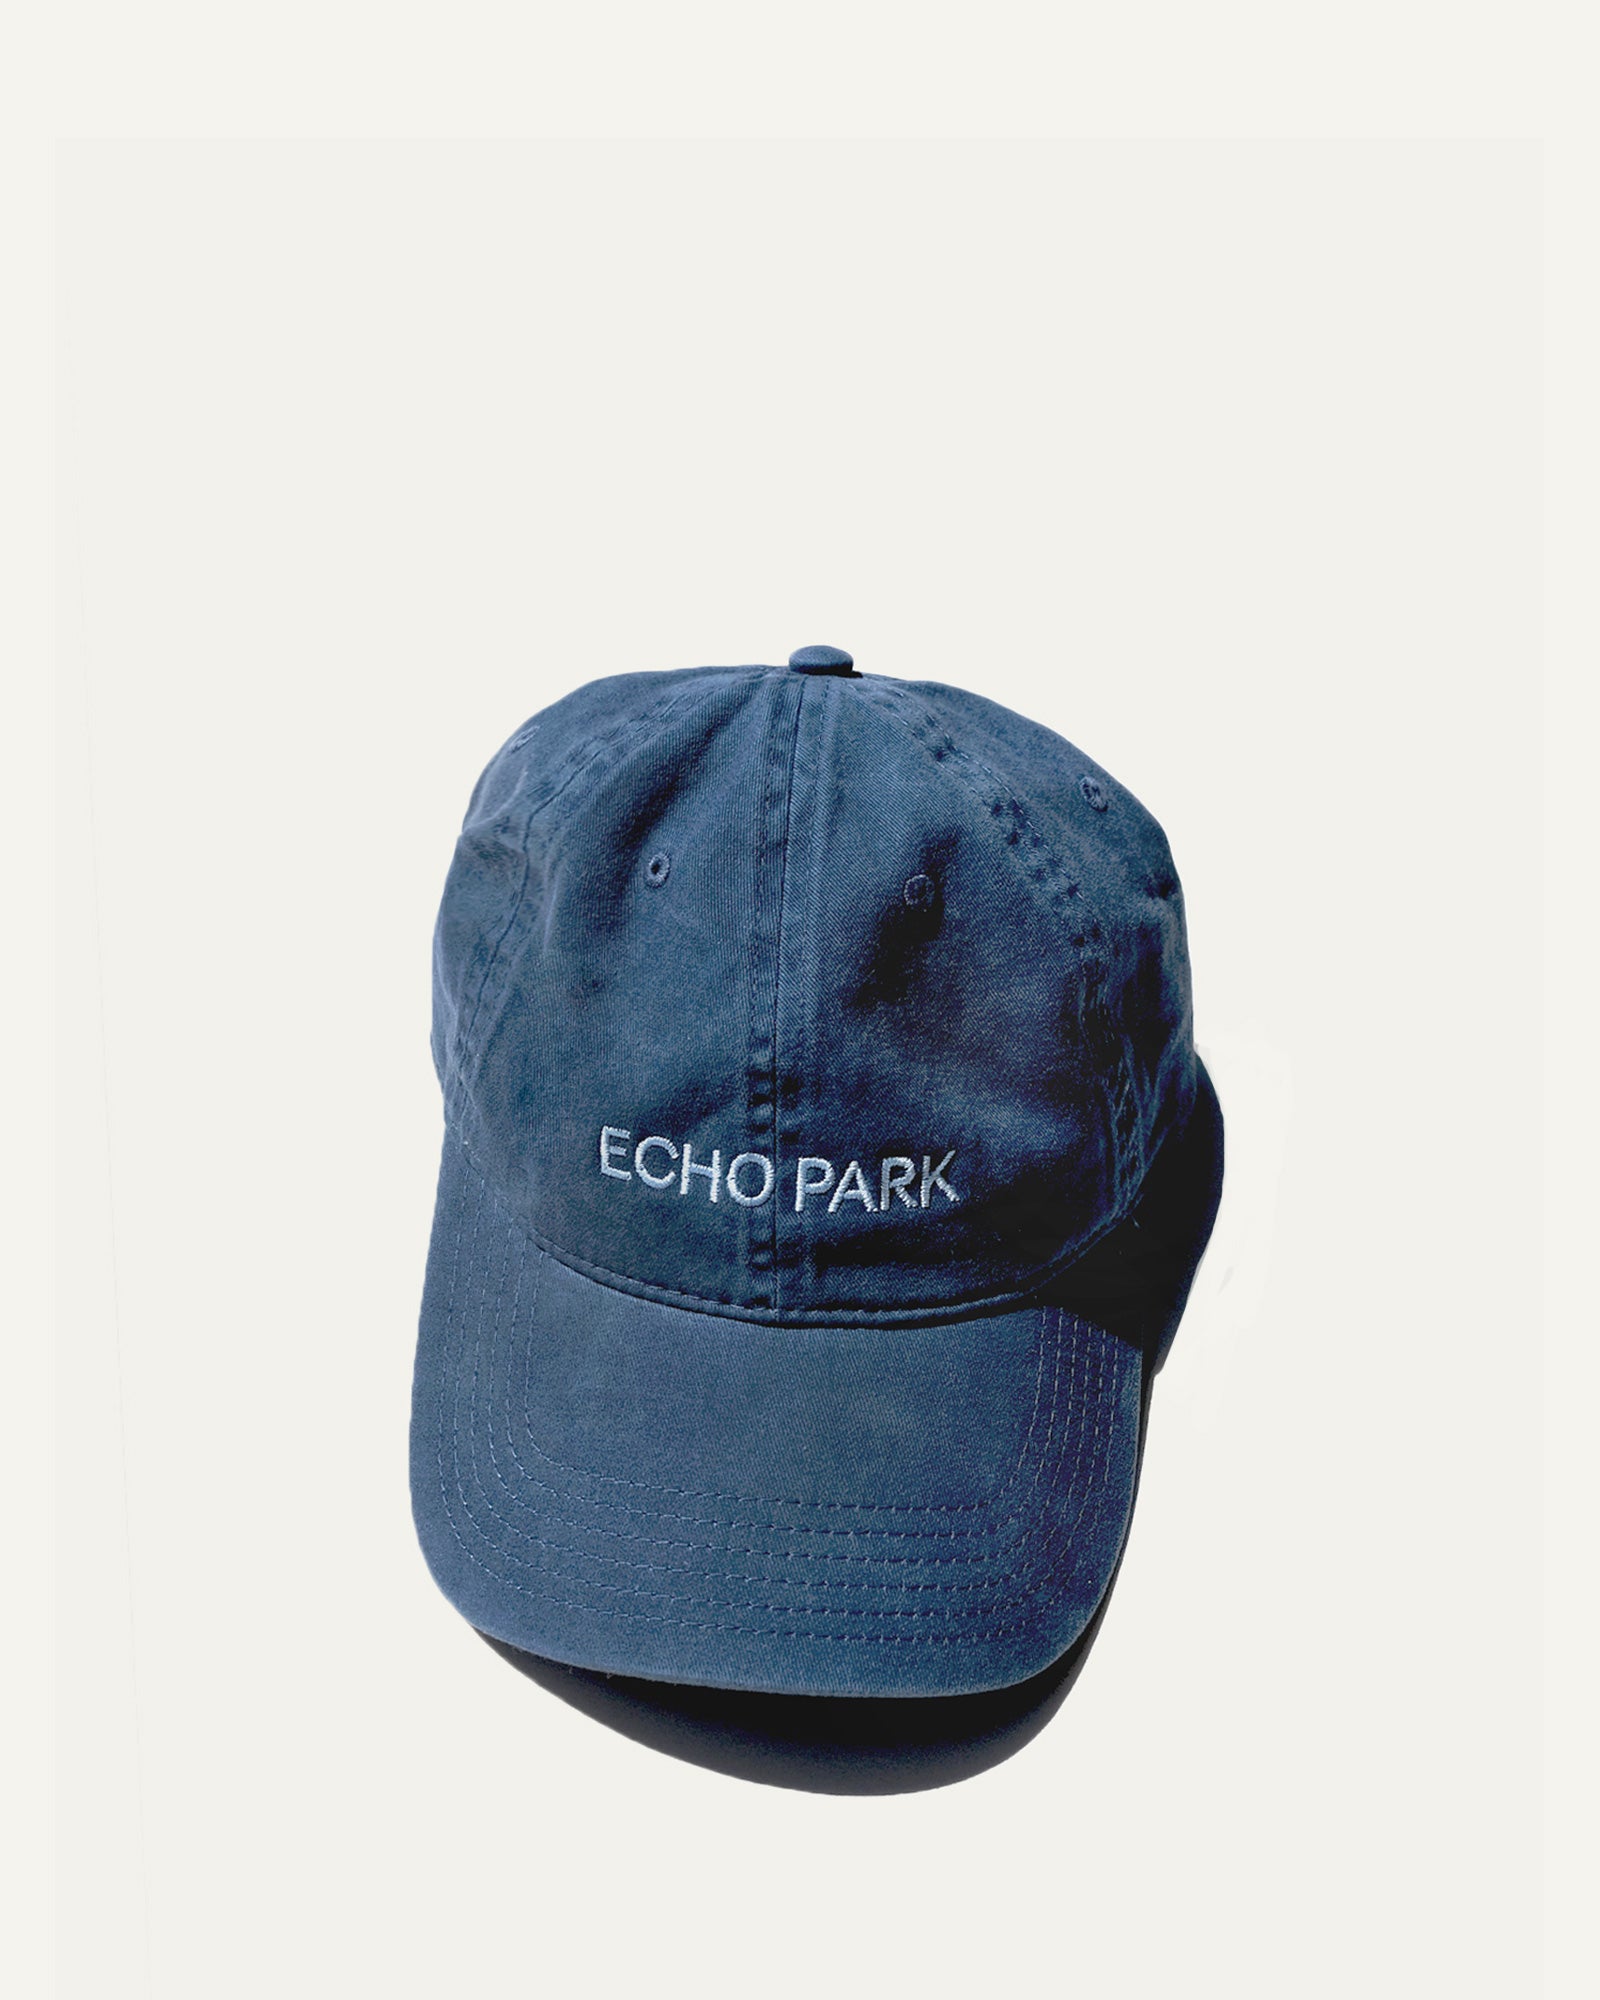 Echo Park Hat